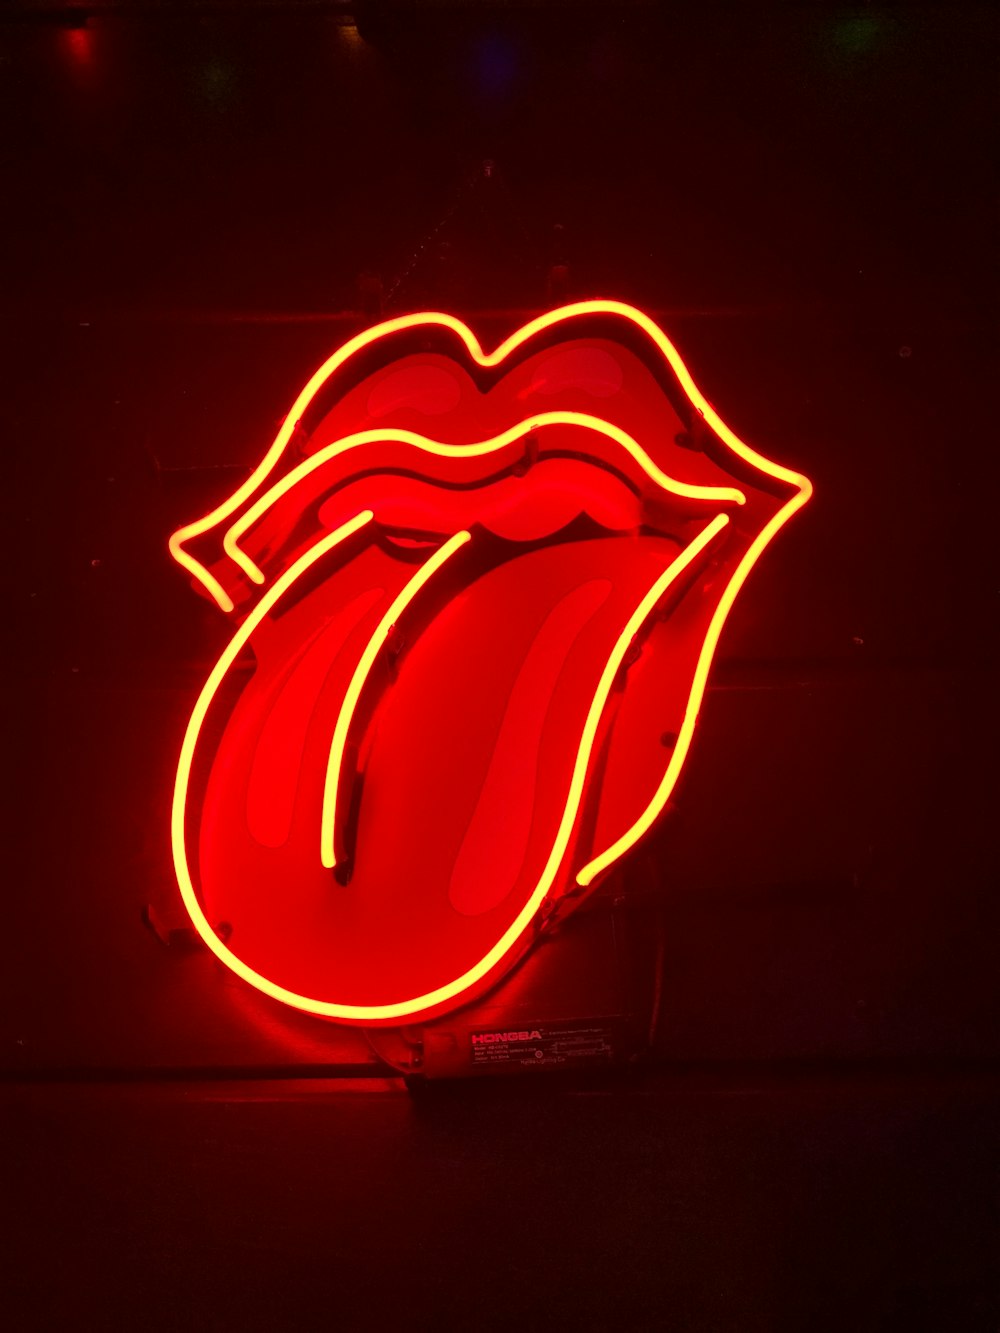 Rolling Stone LED light signage